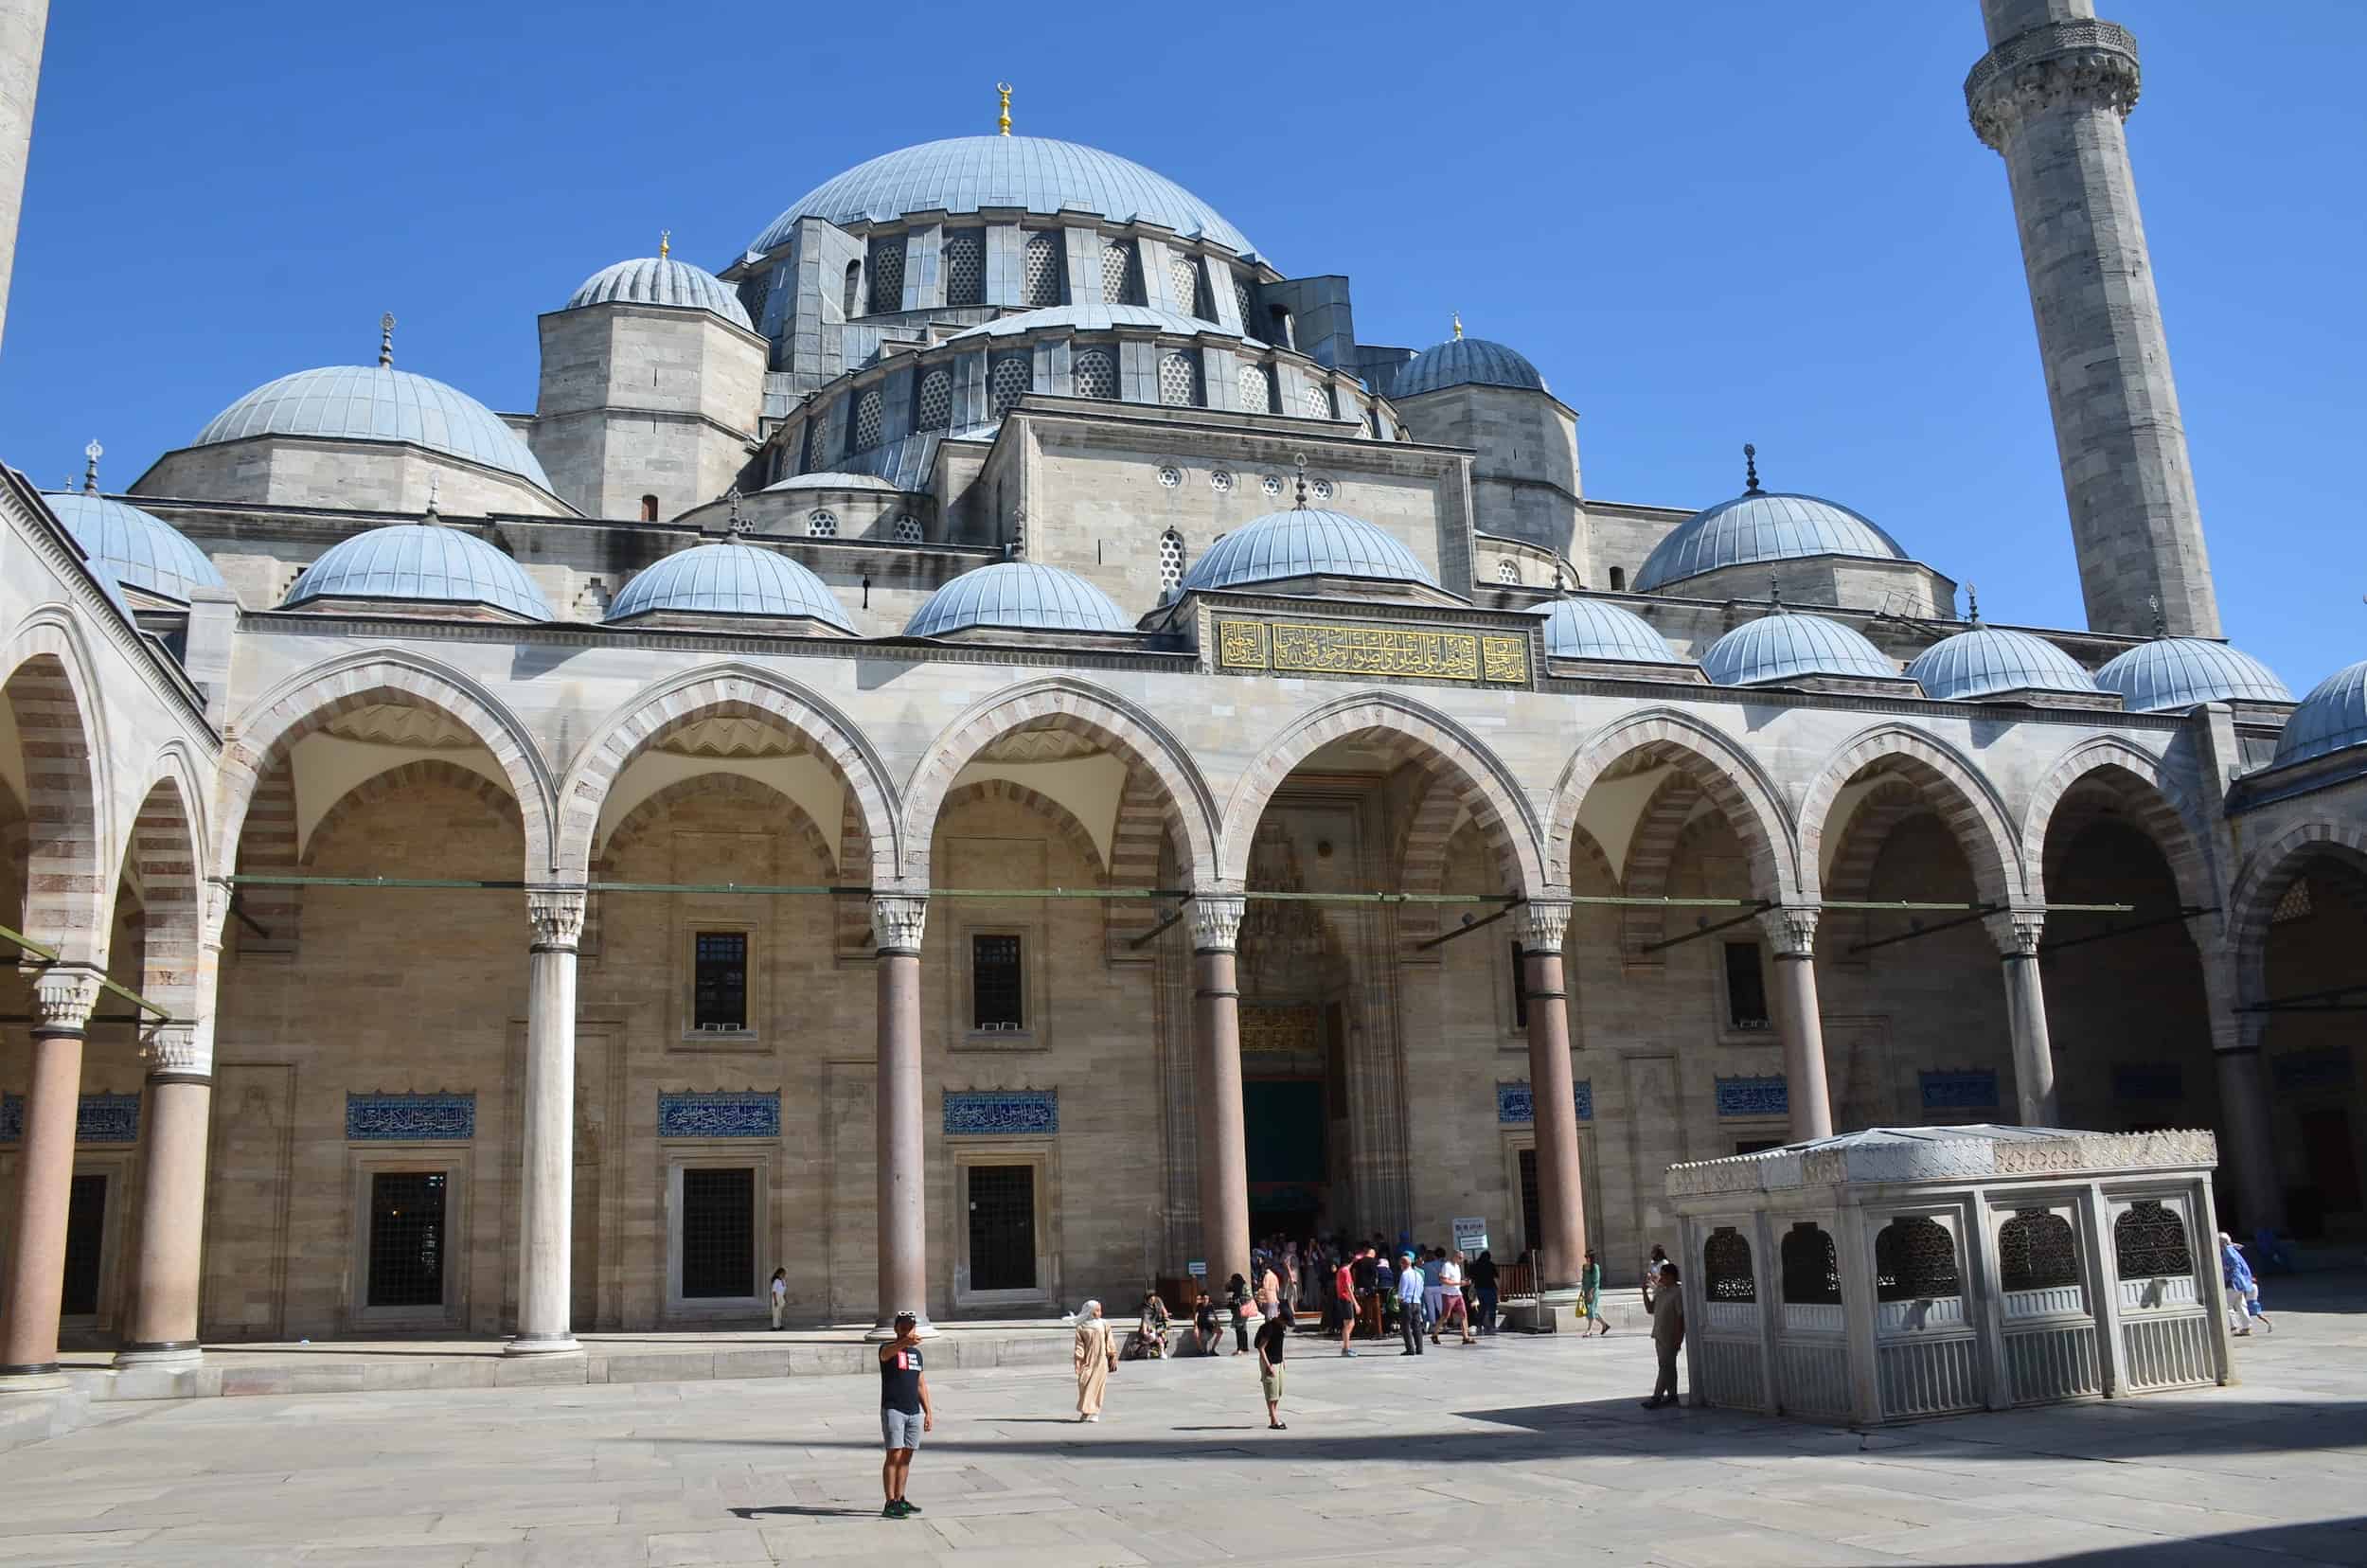 Courtyard of the Süleymaniye Mosque in Istanbul, Turkey